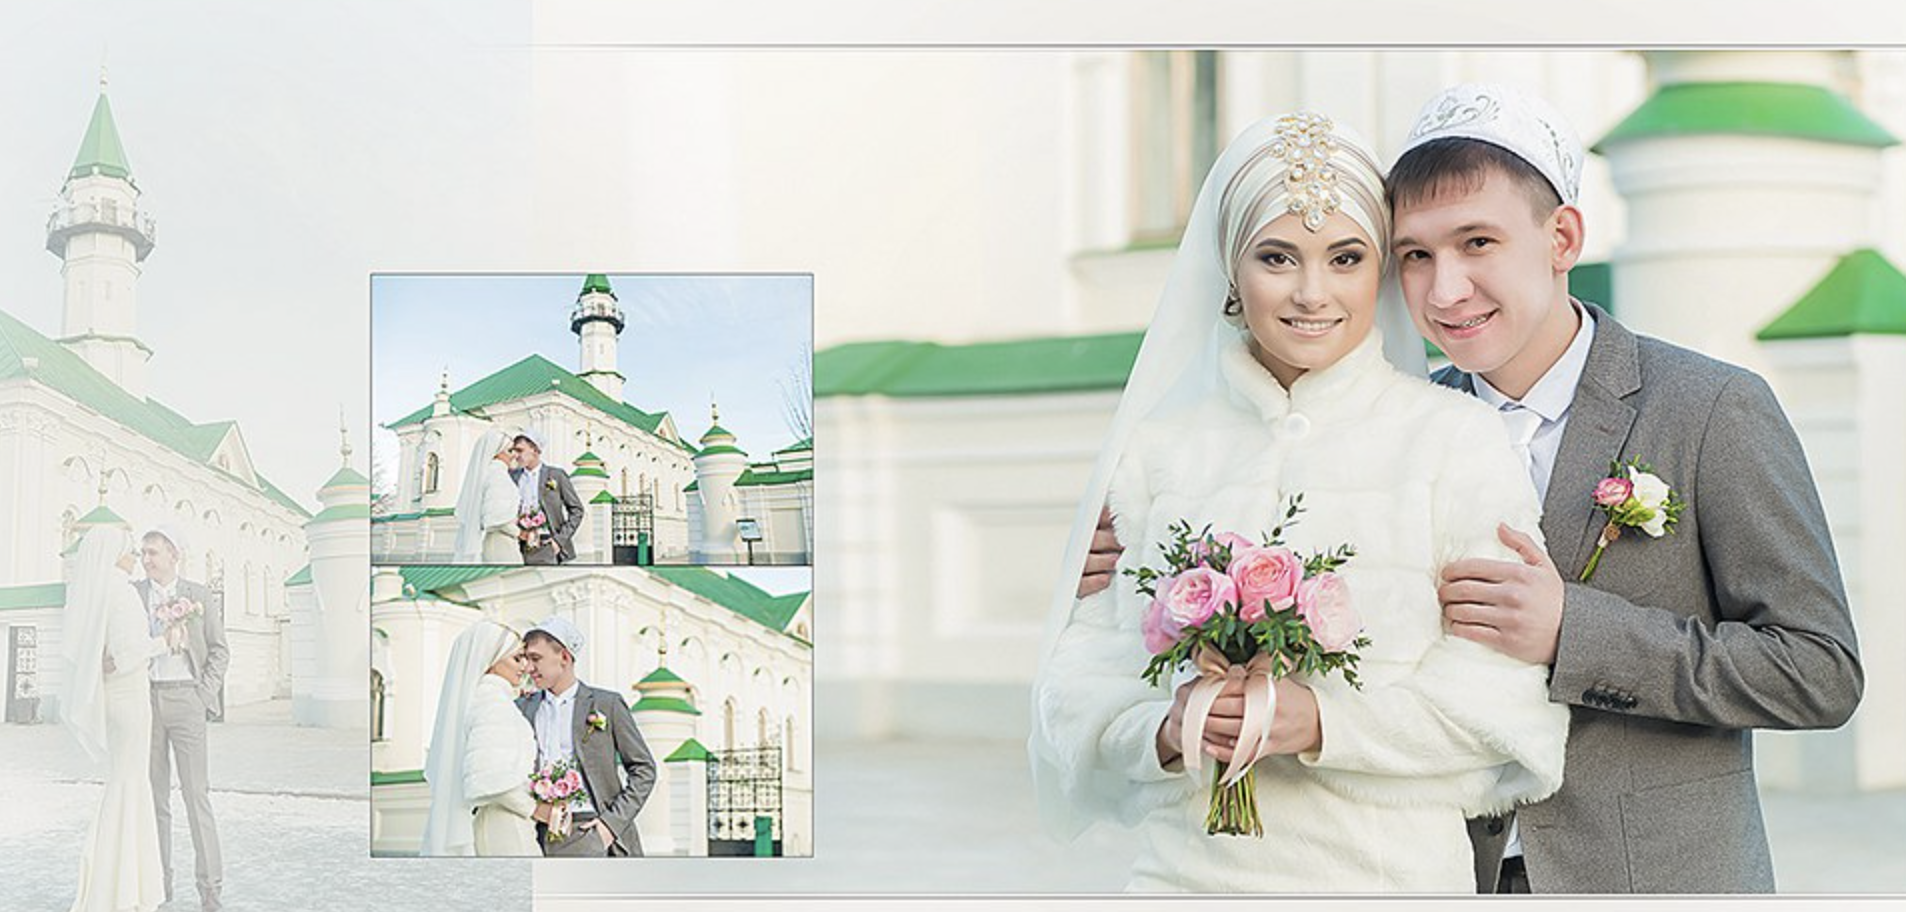 Поздравления на свадьбу на татарском языке: особенности традиций, народные стихи